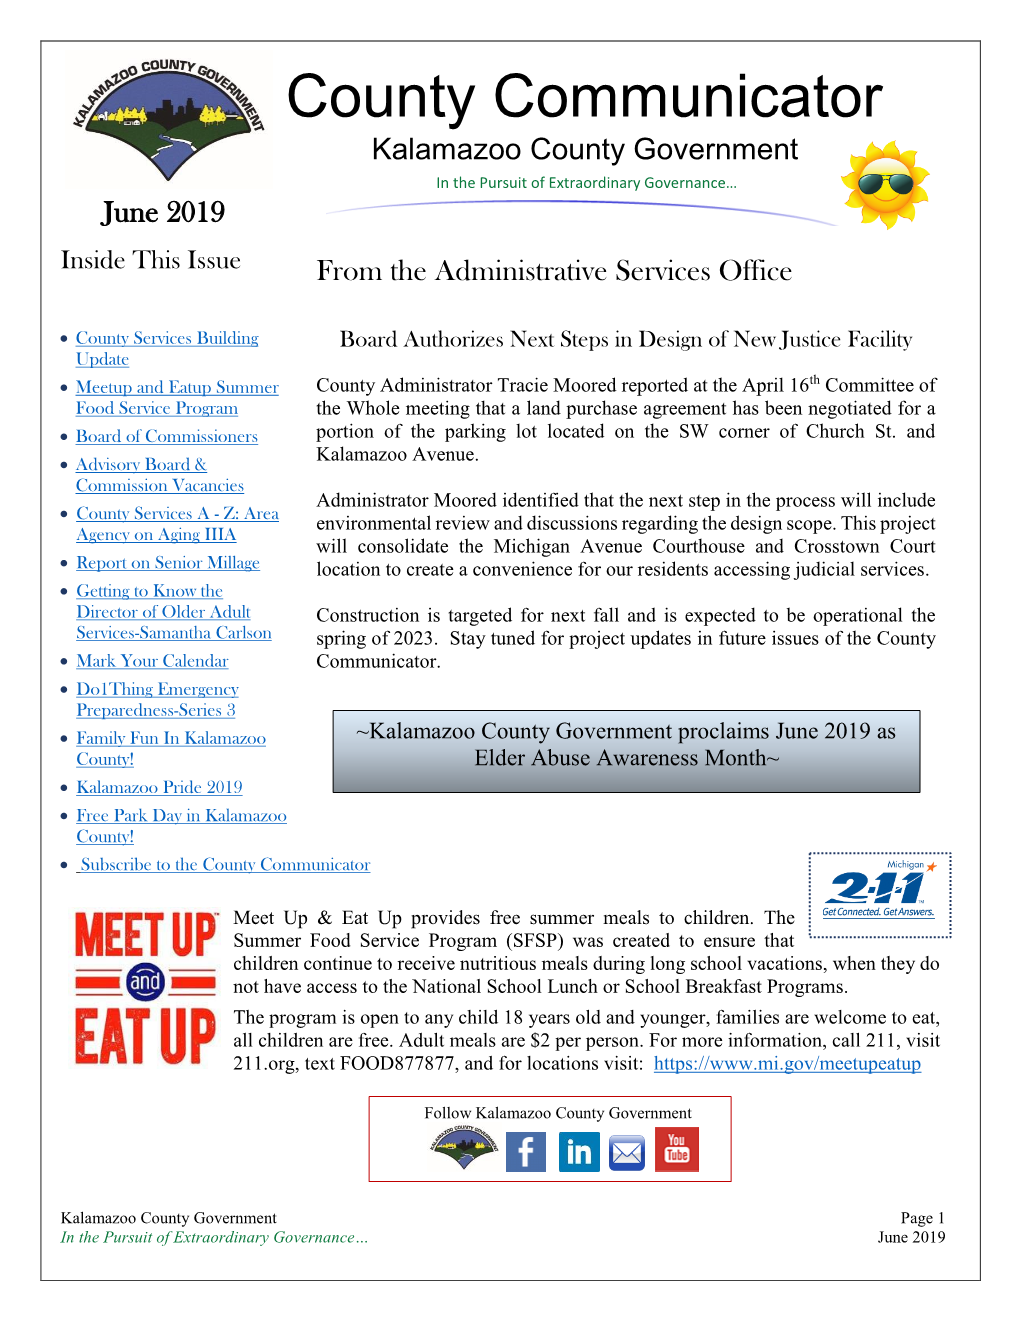 June 2019 County Communicator Newsletter